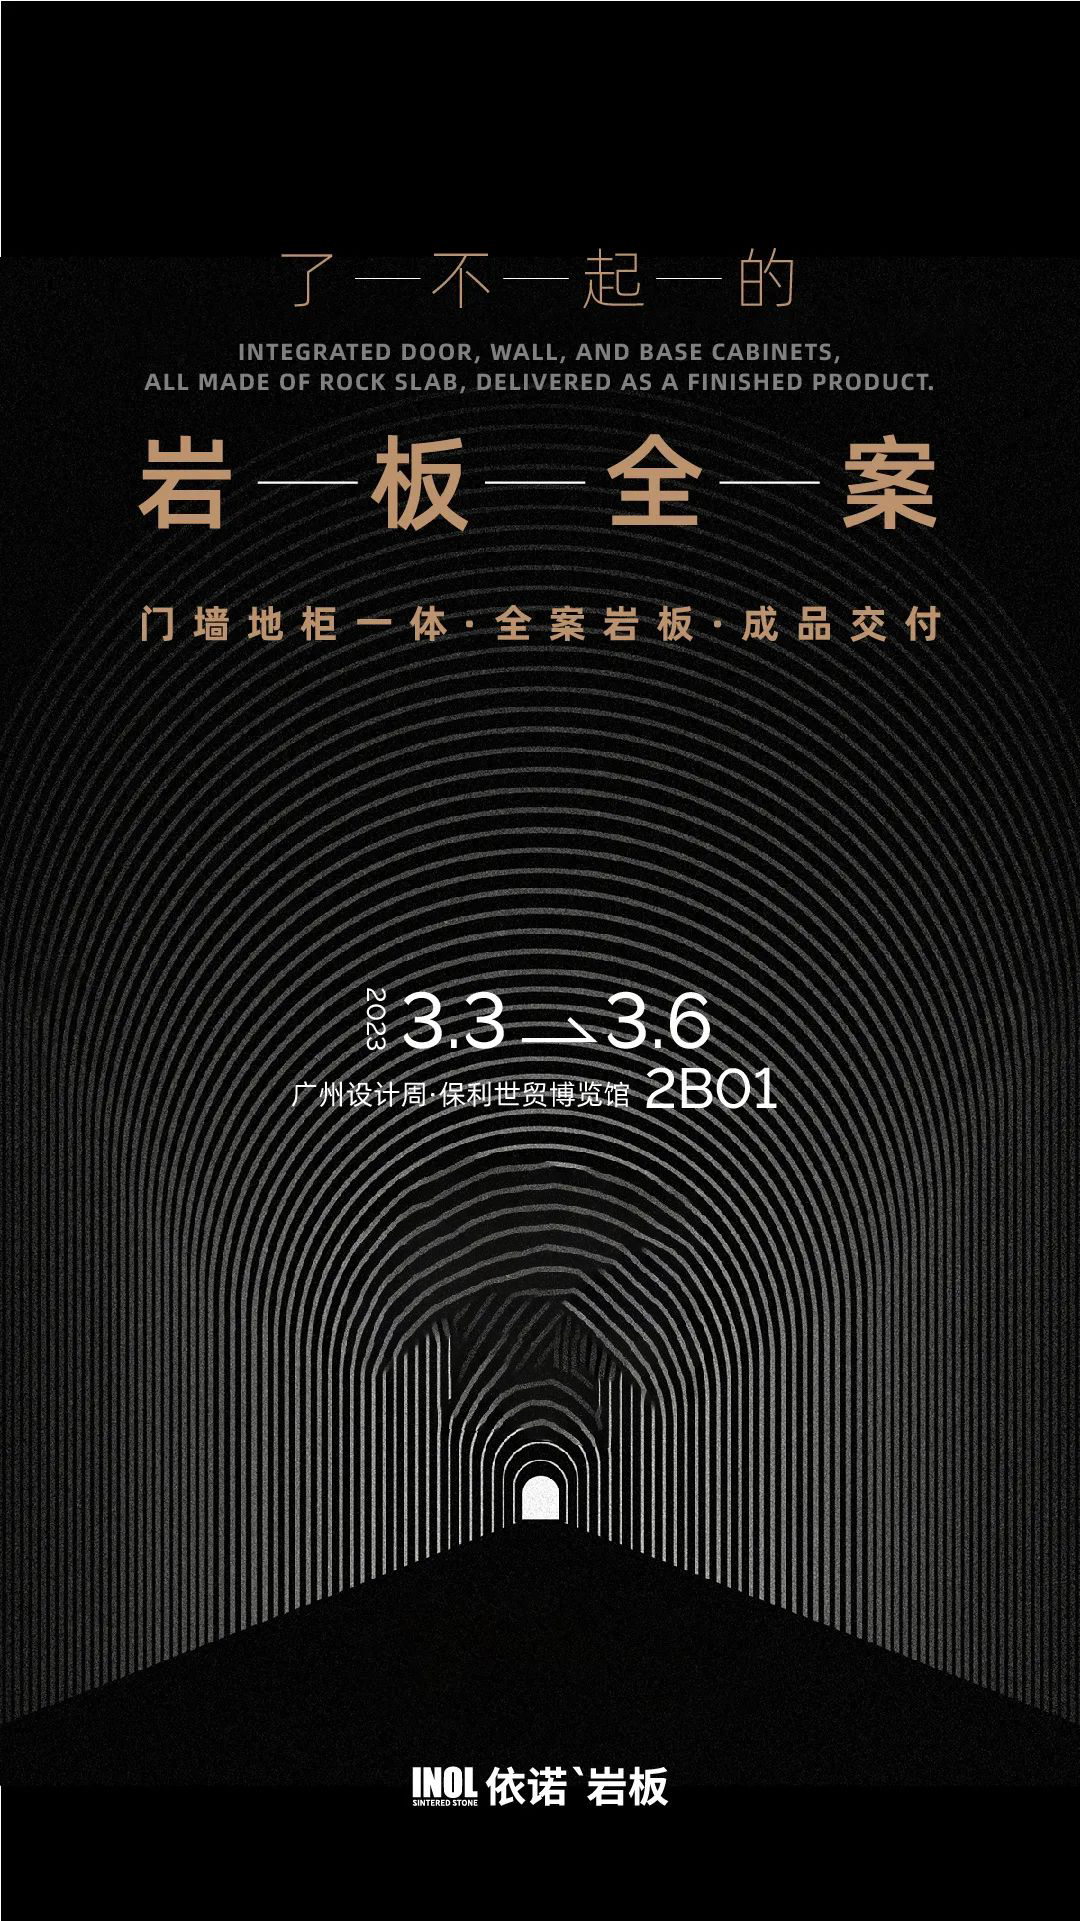 广州设计周·保利世贸博物馆·【2B01】  依诺×林学明“数理之美”主题展馆  等您打卡！